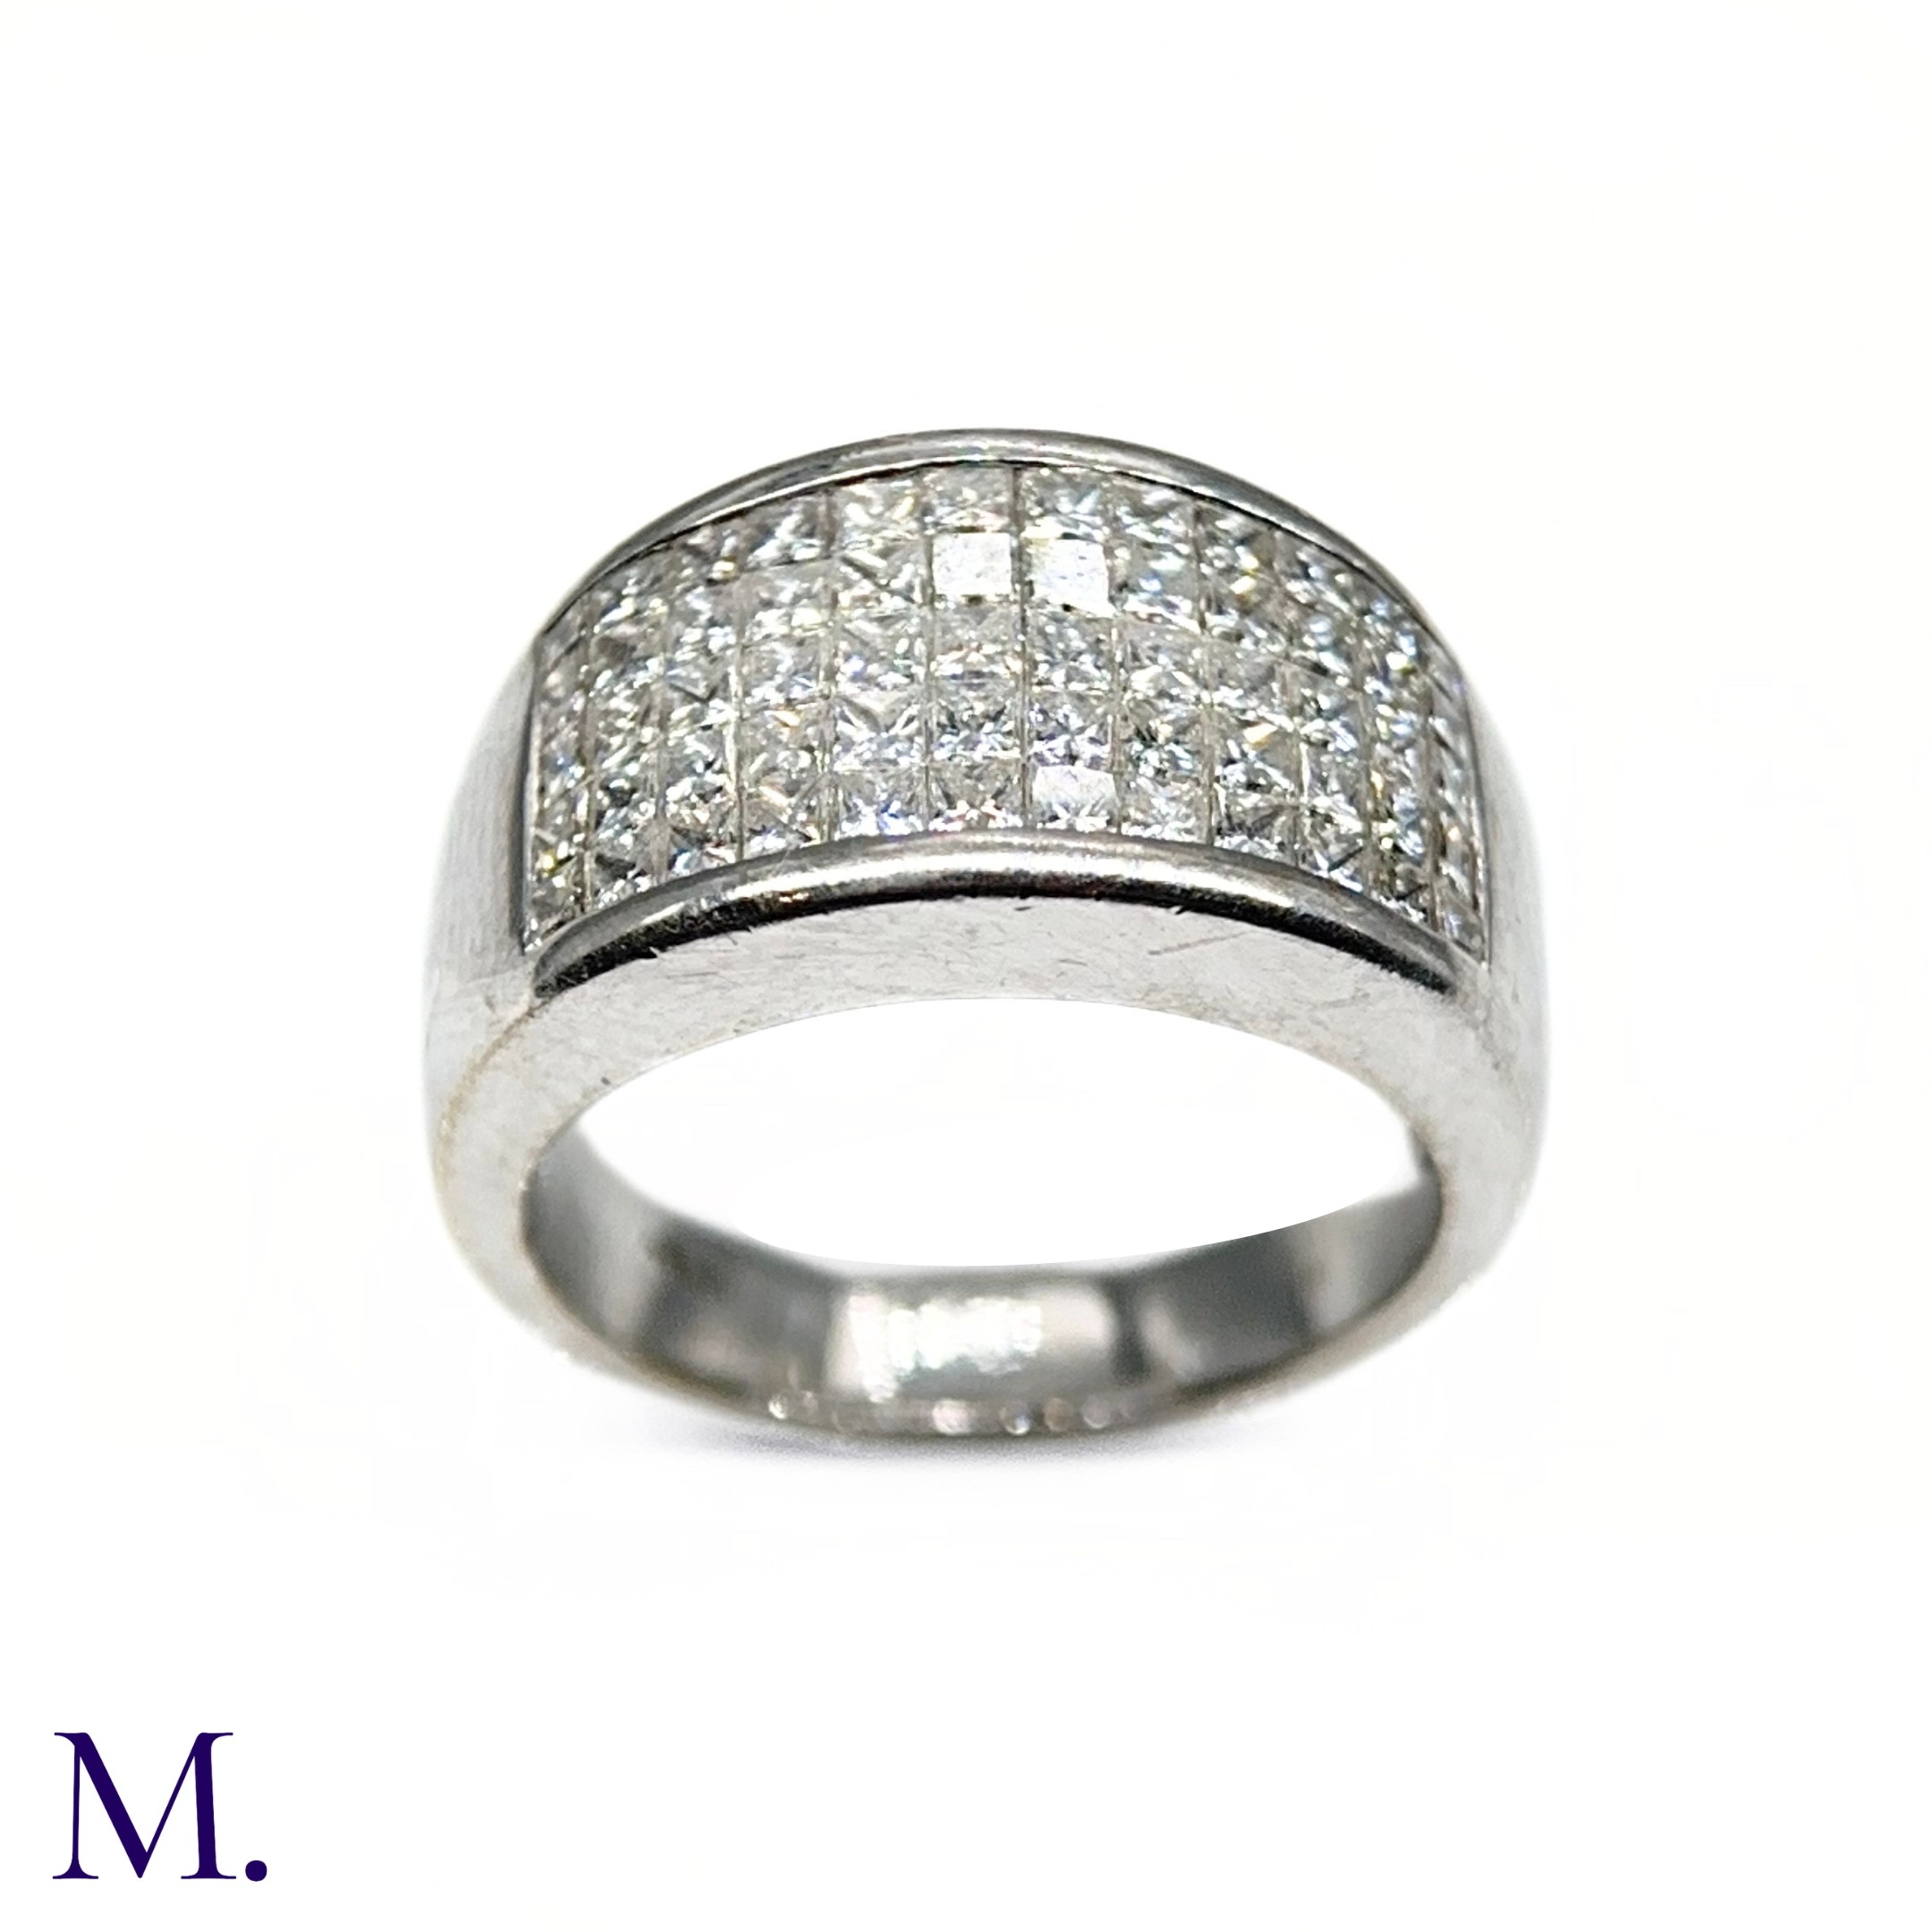 An 5-Row Asscher-cut Diamond Ring - Image 2 of 7